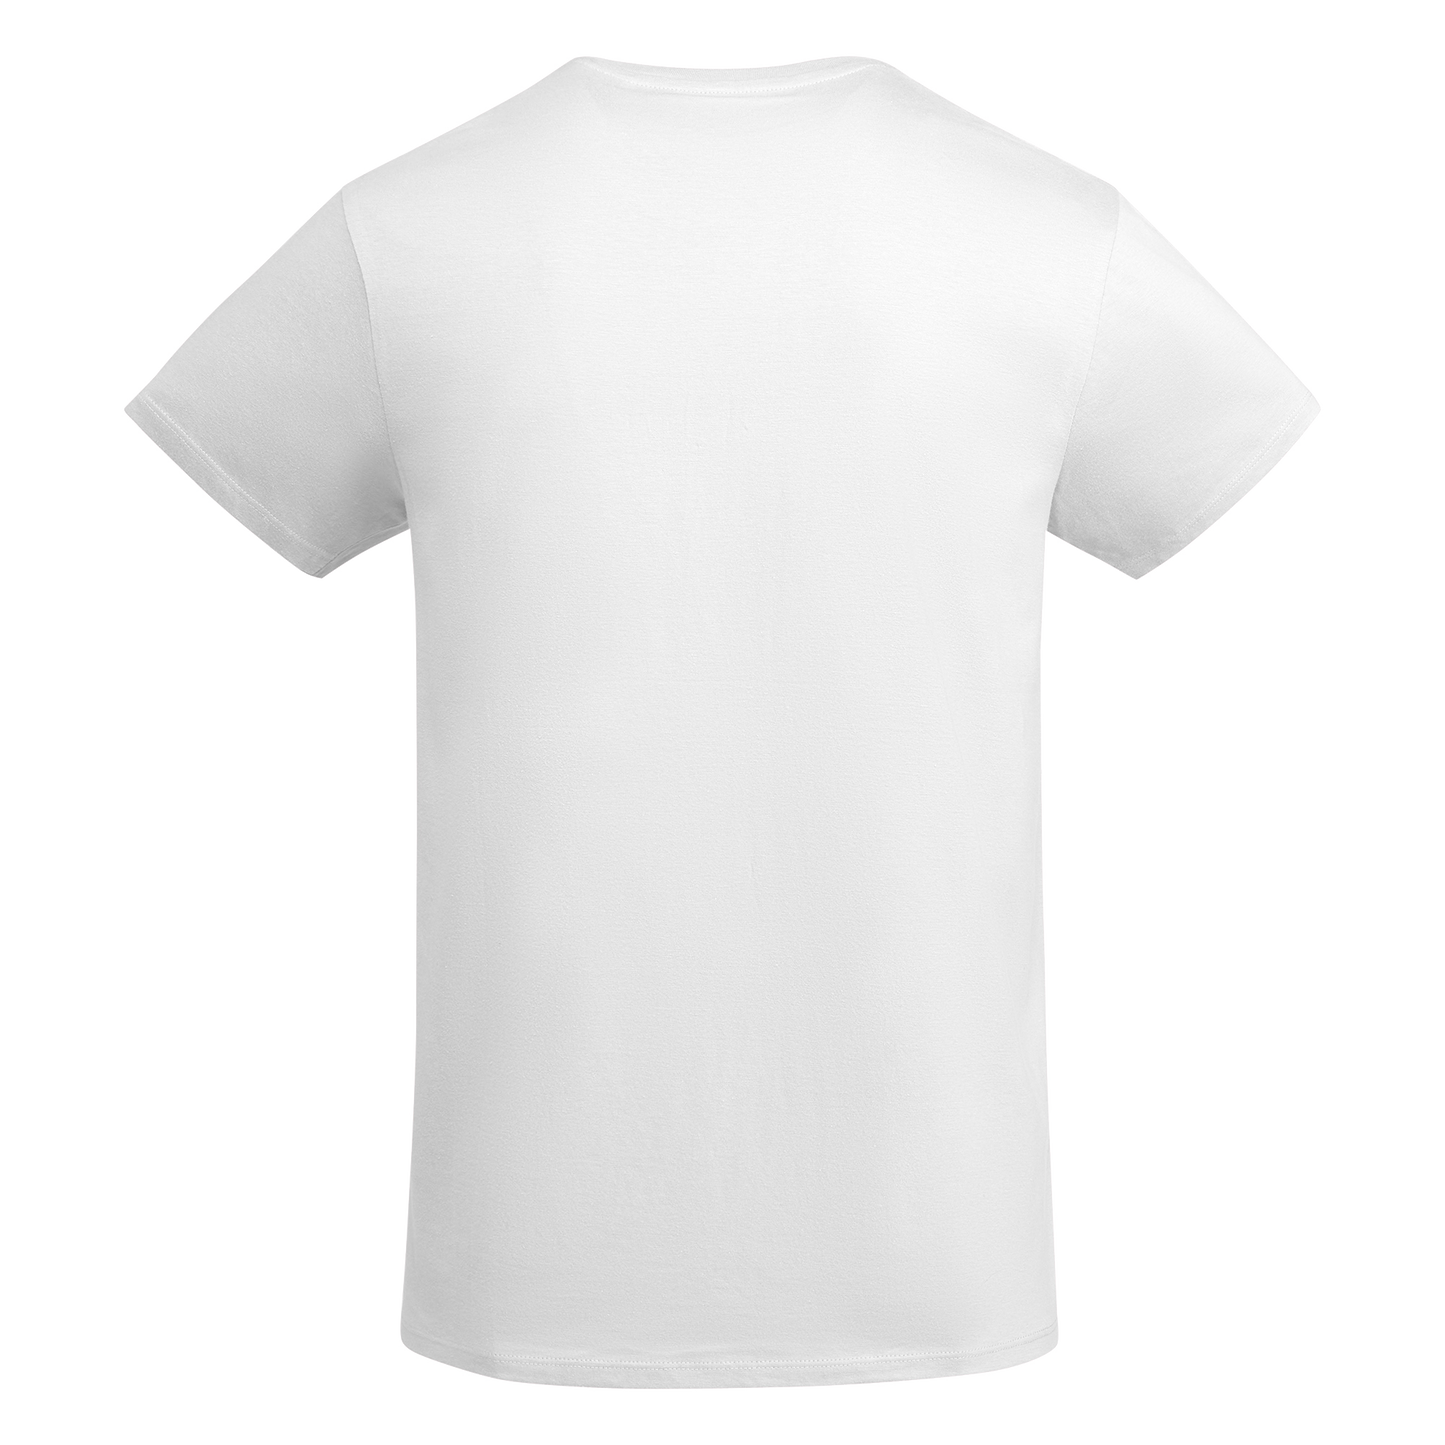 Sun-kissed Summer shirt - White - Unisex